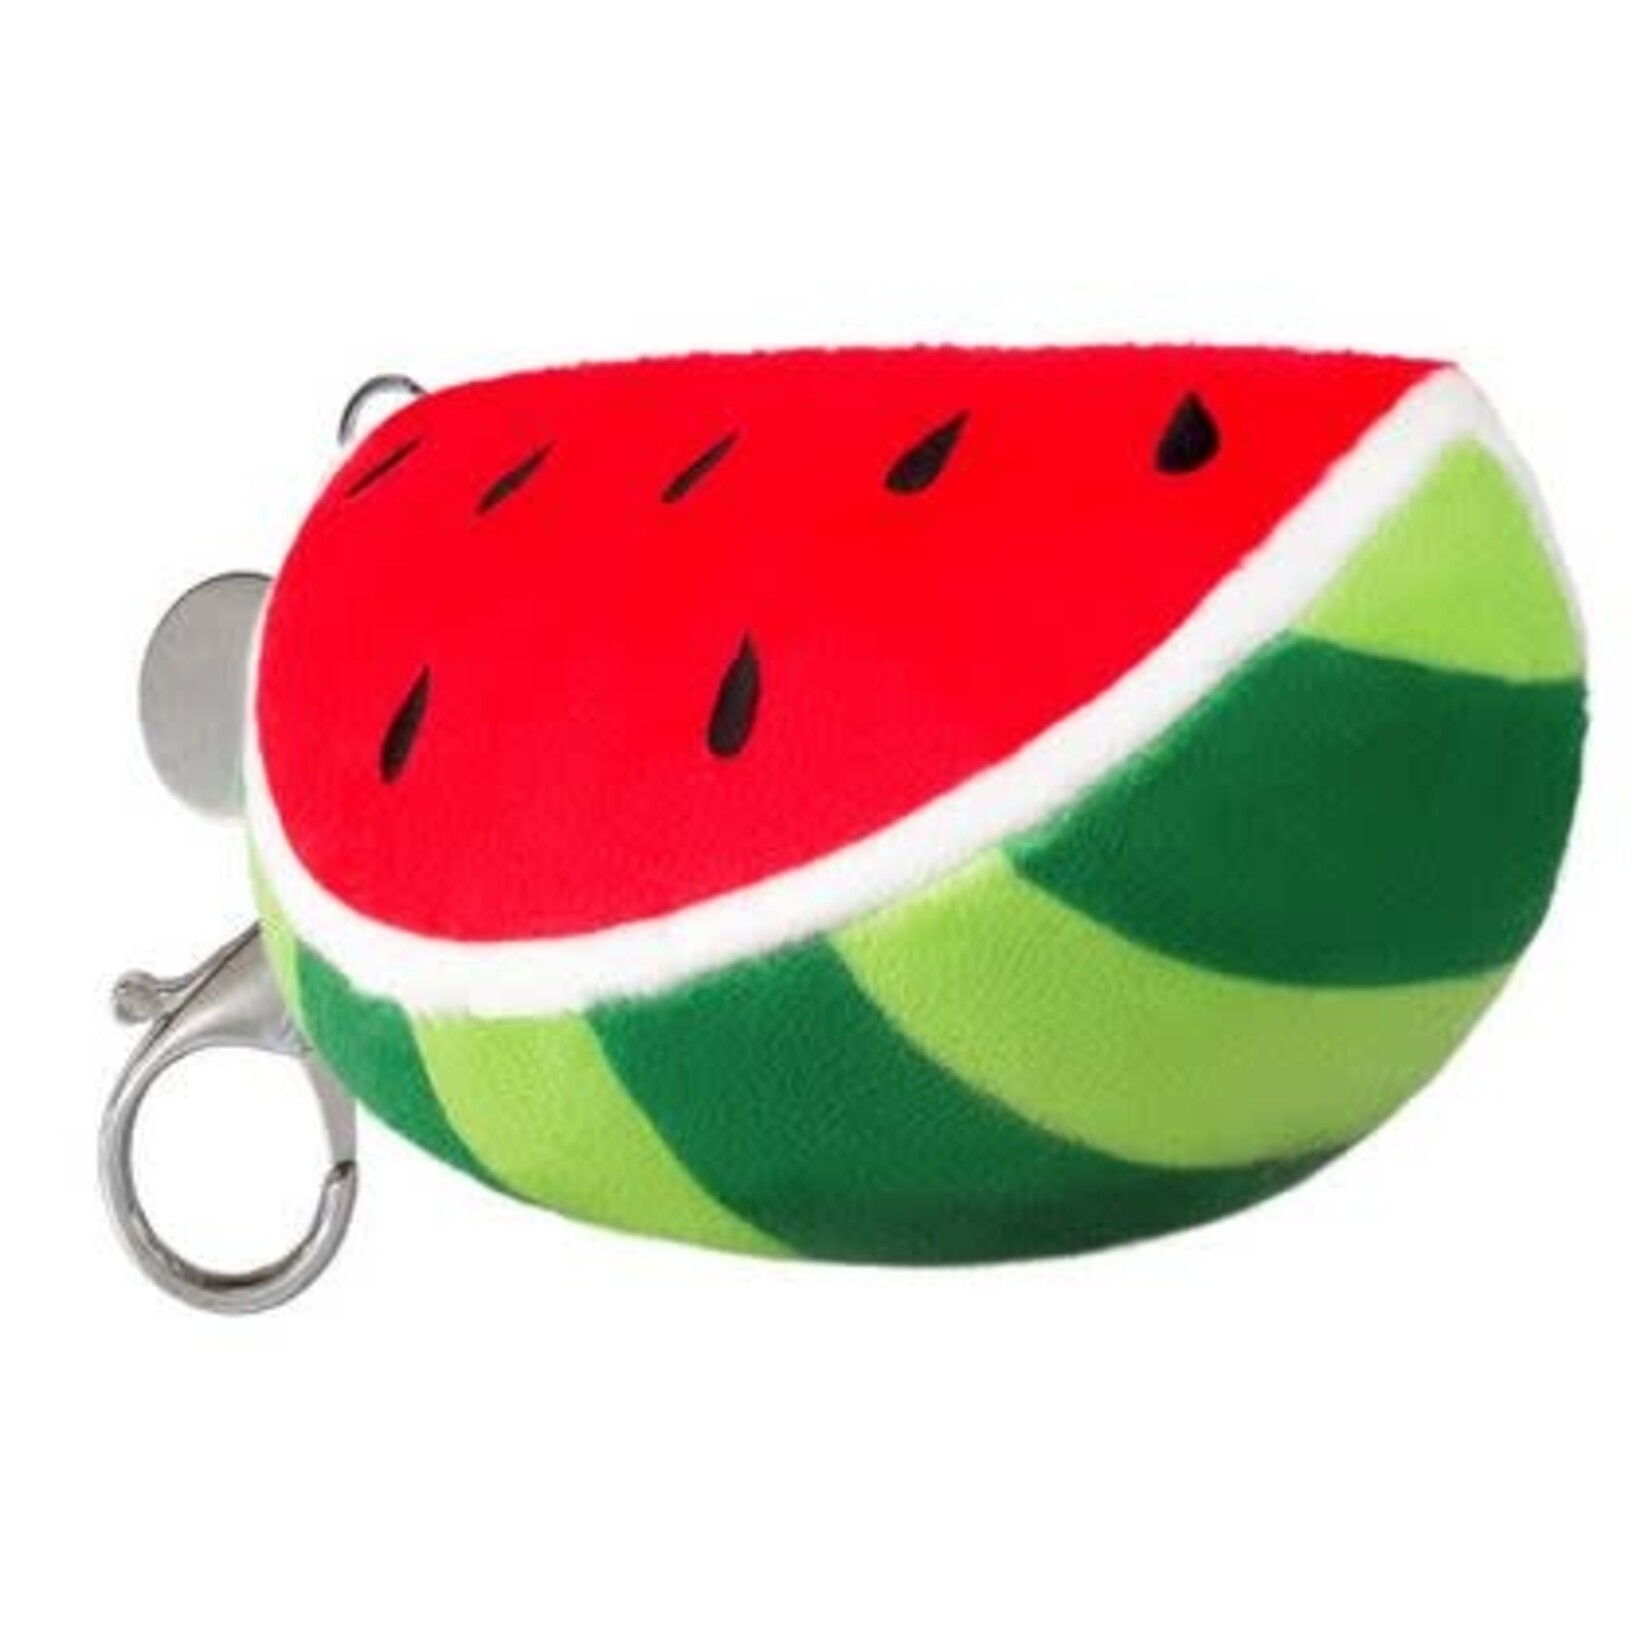 Squishable Micro Comfort Food Watermelon